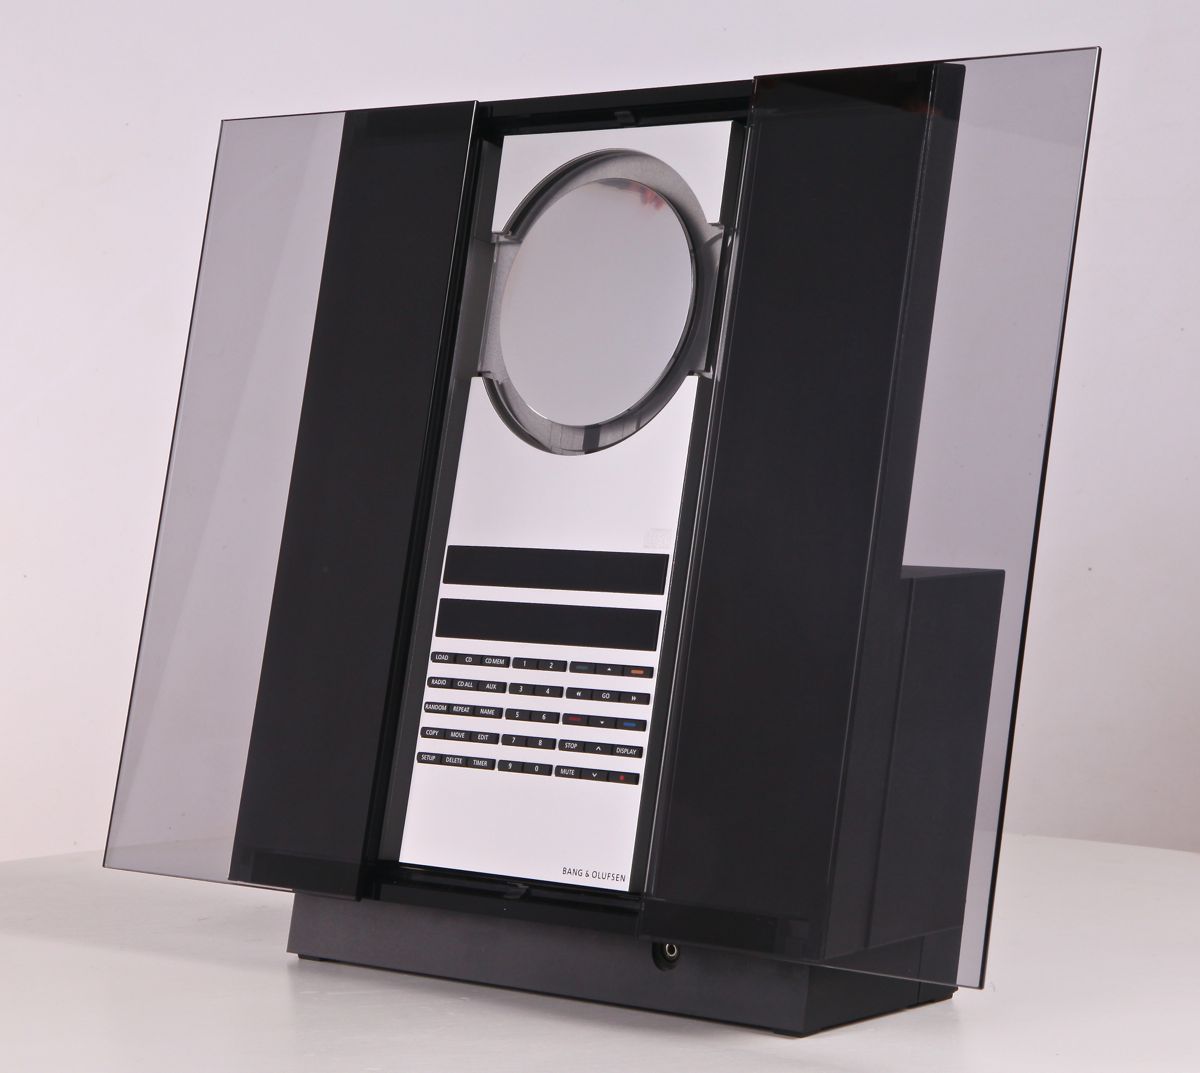 BeoSound 3200 - HDD Storage (2005)